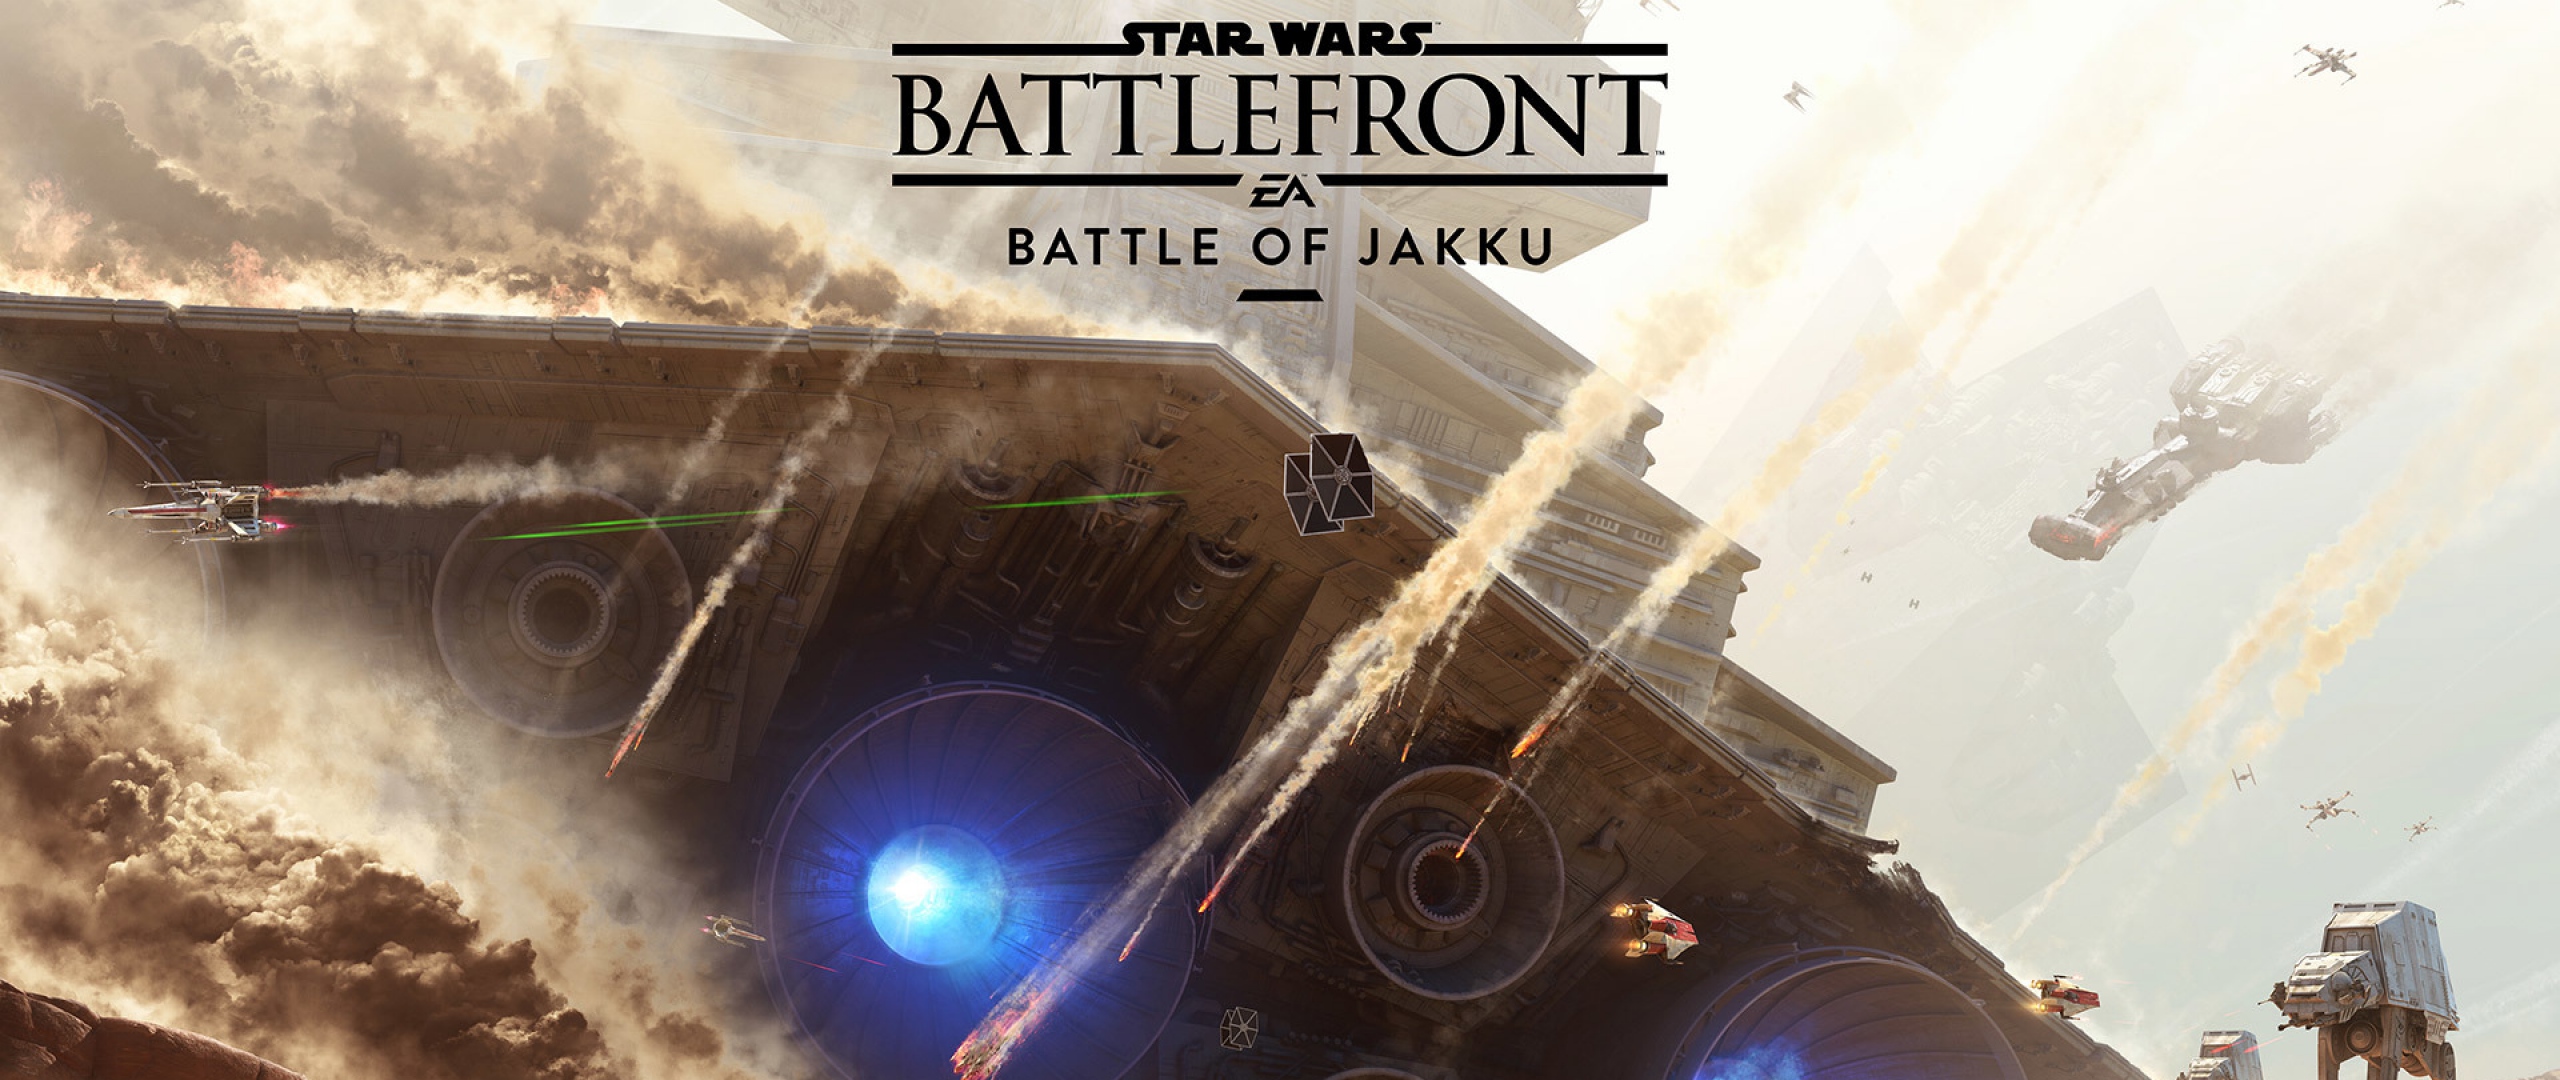 Wallpaper Star Wars Battlefront Battle Of Jakku